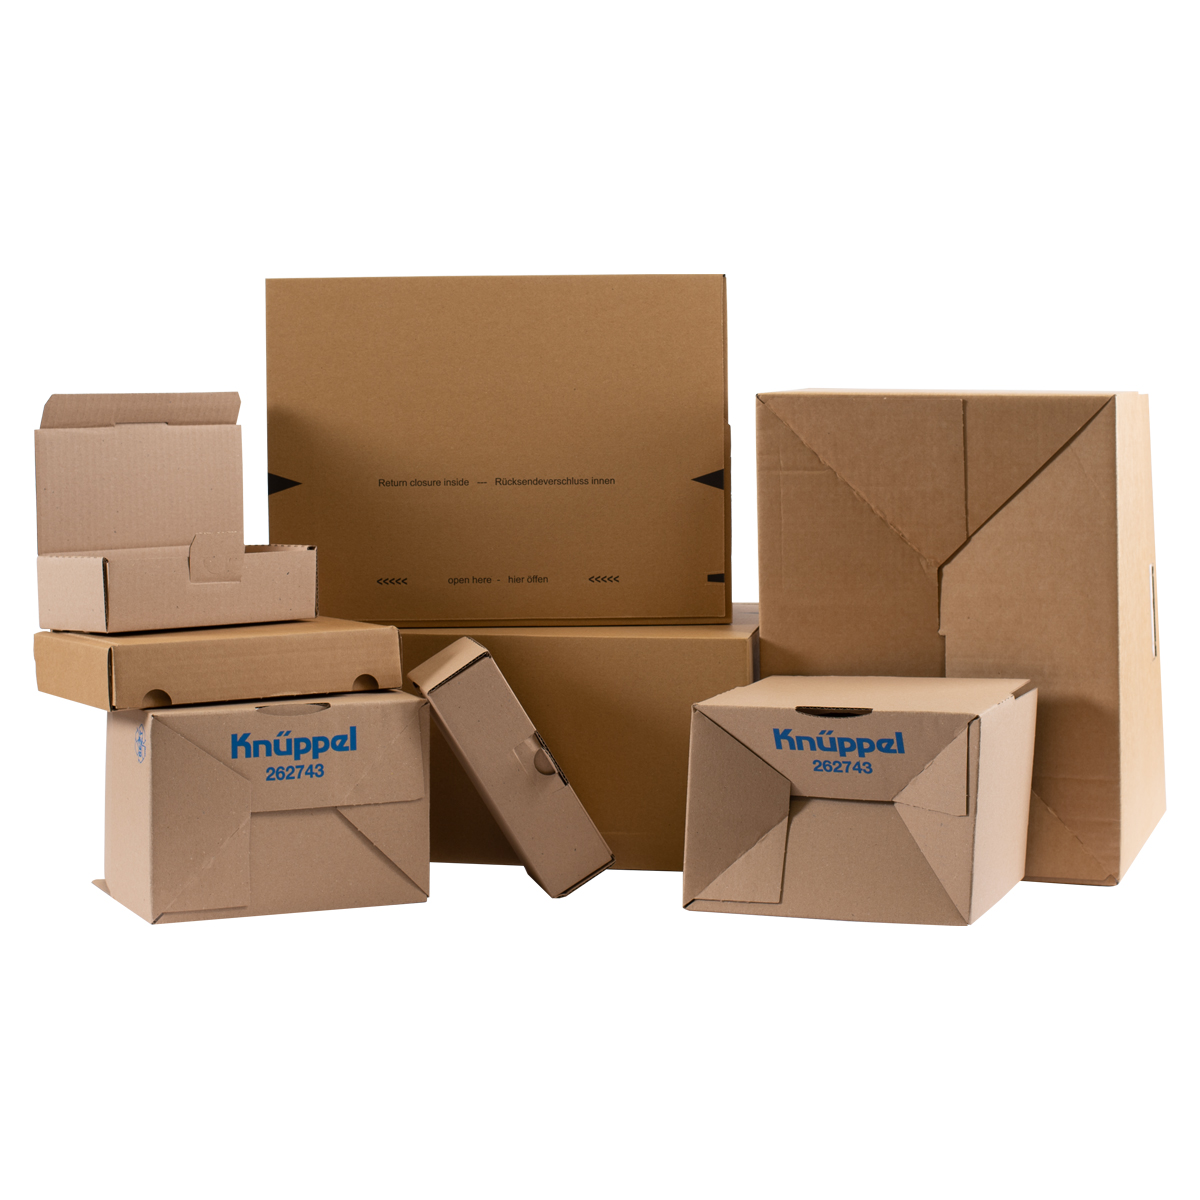 Kartons zum schnellen Verpacken